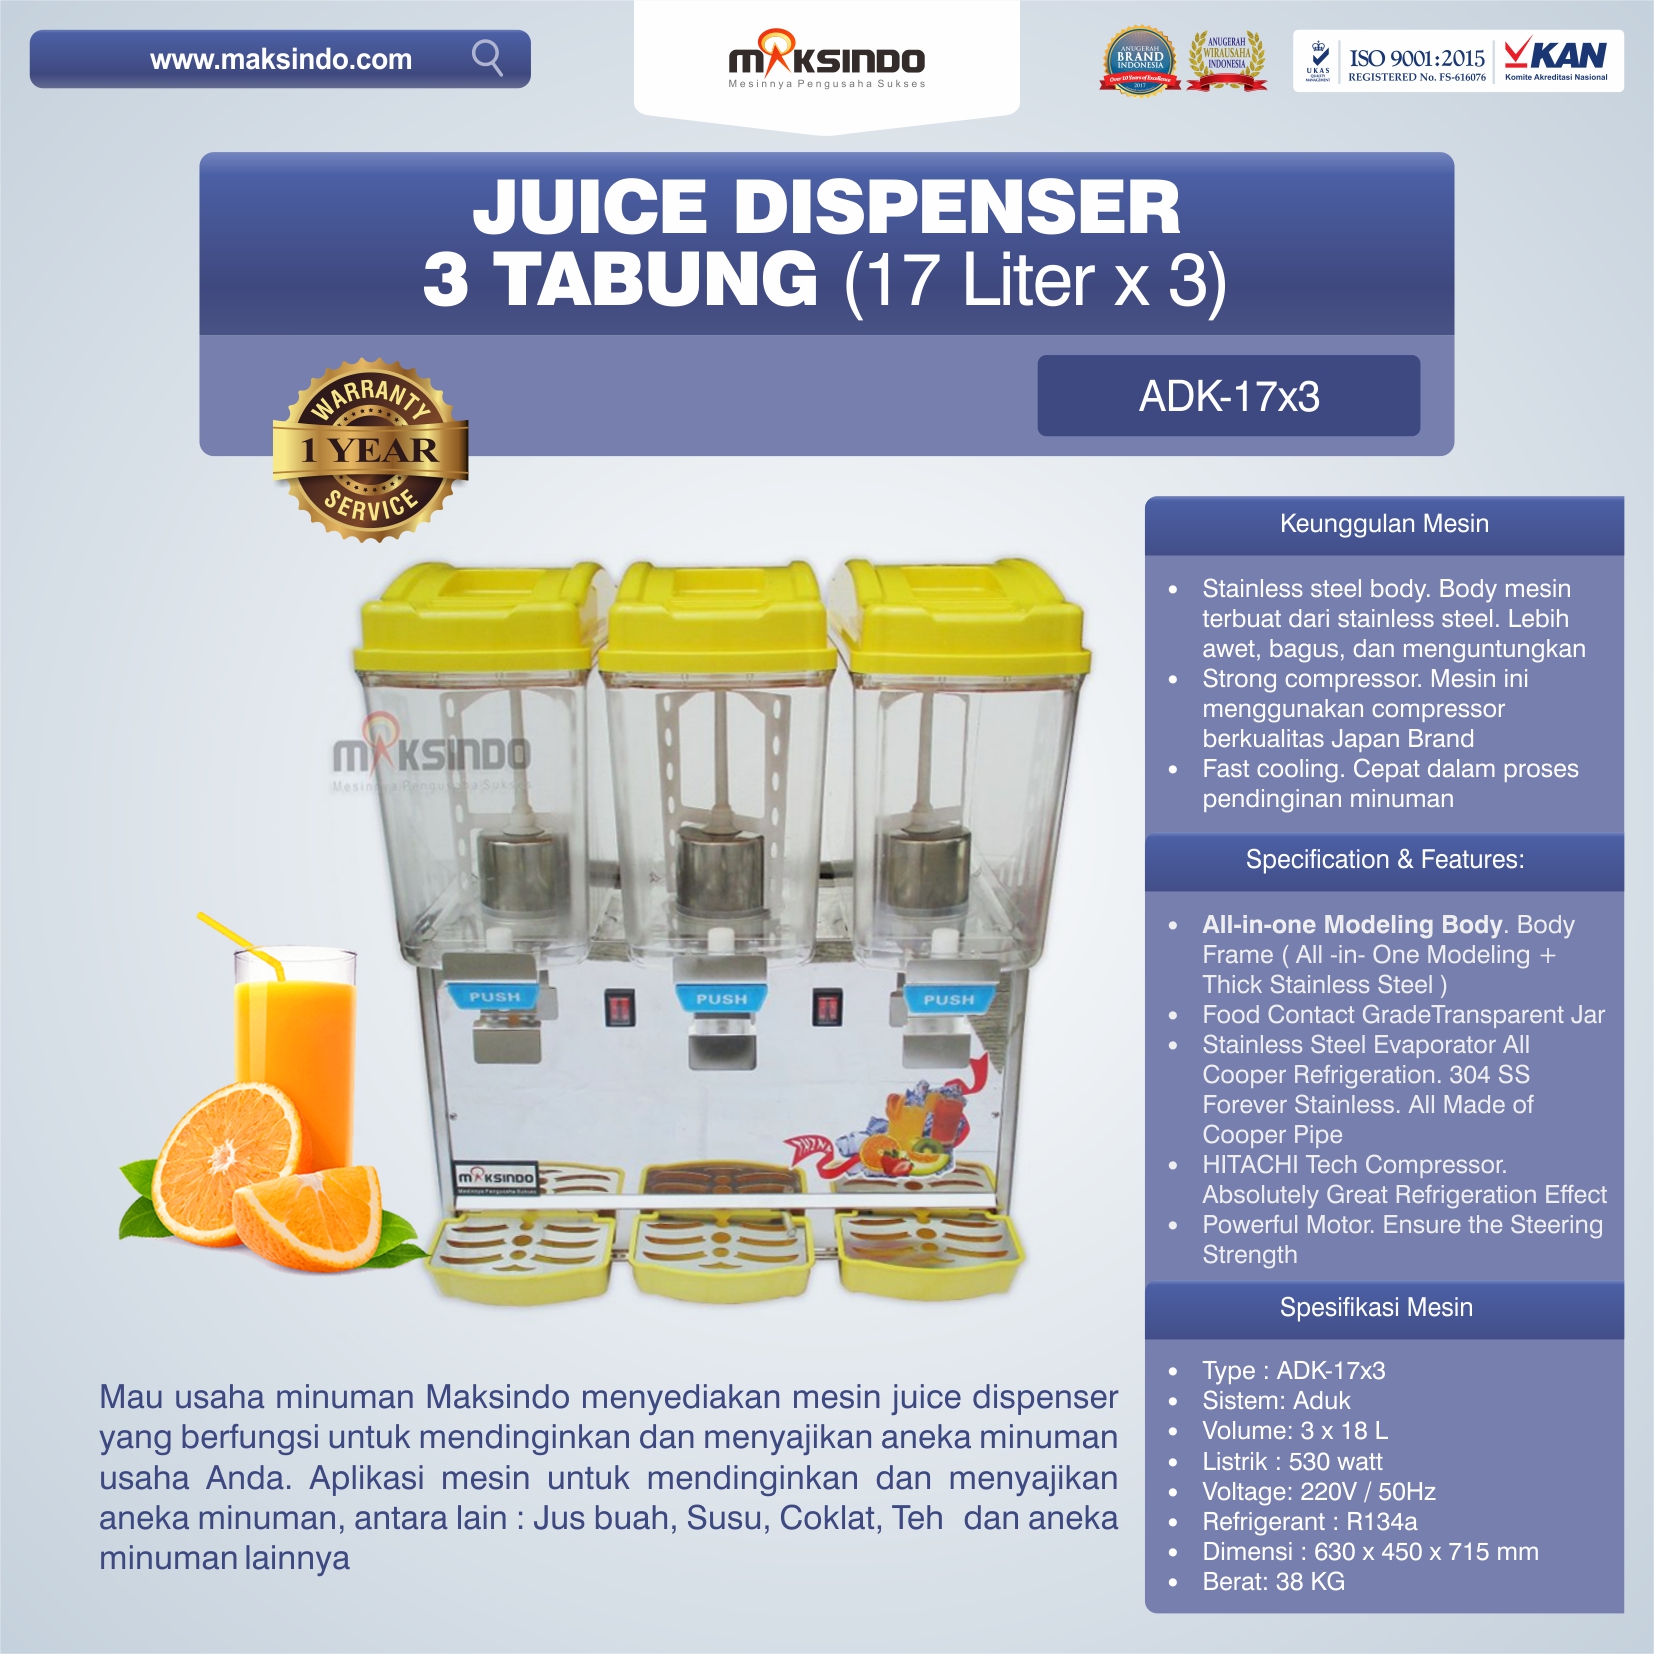 Jual Mesin Juice Dispenser 3 Tabung (17 Liter)-ADK-17×3 di Medan